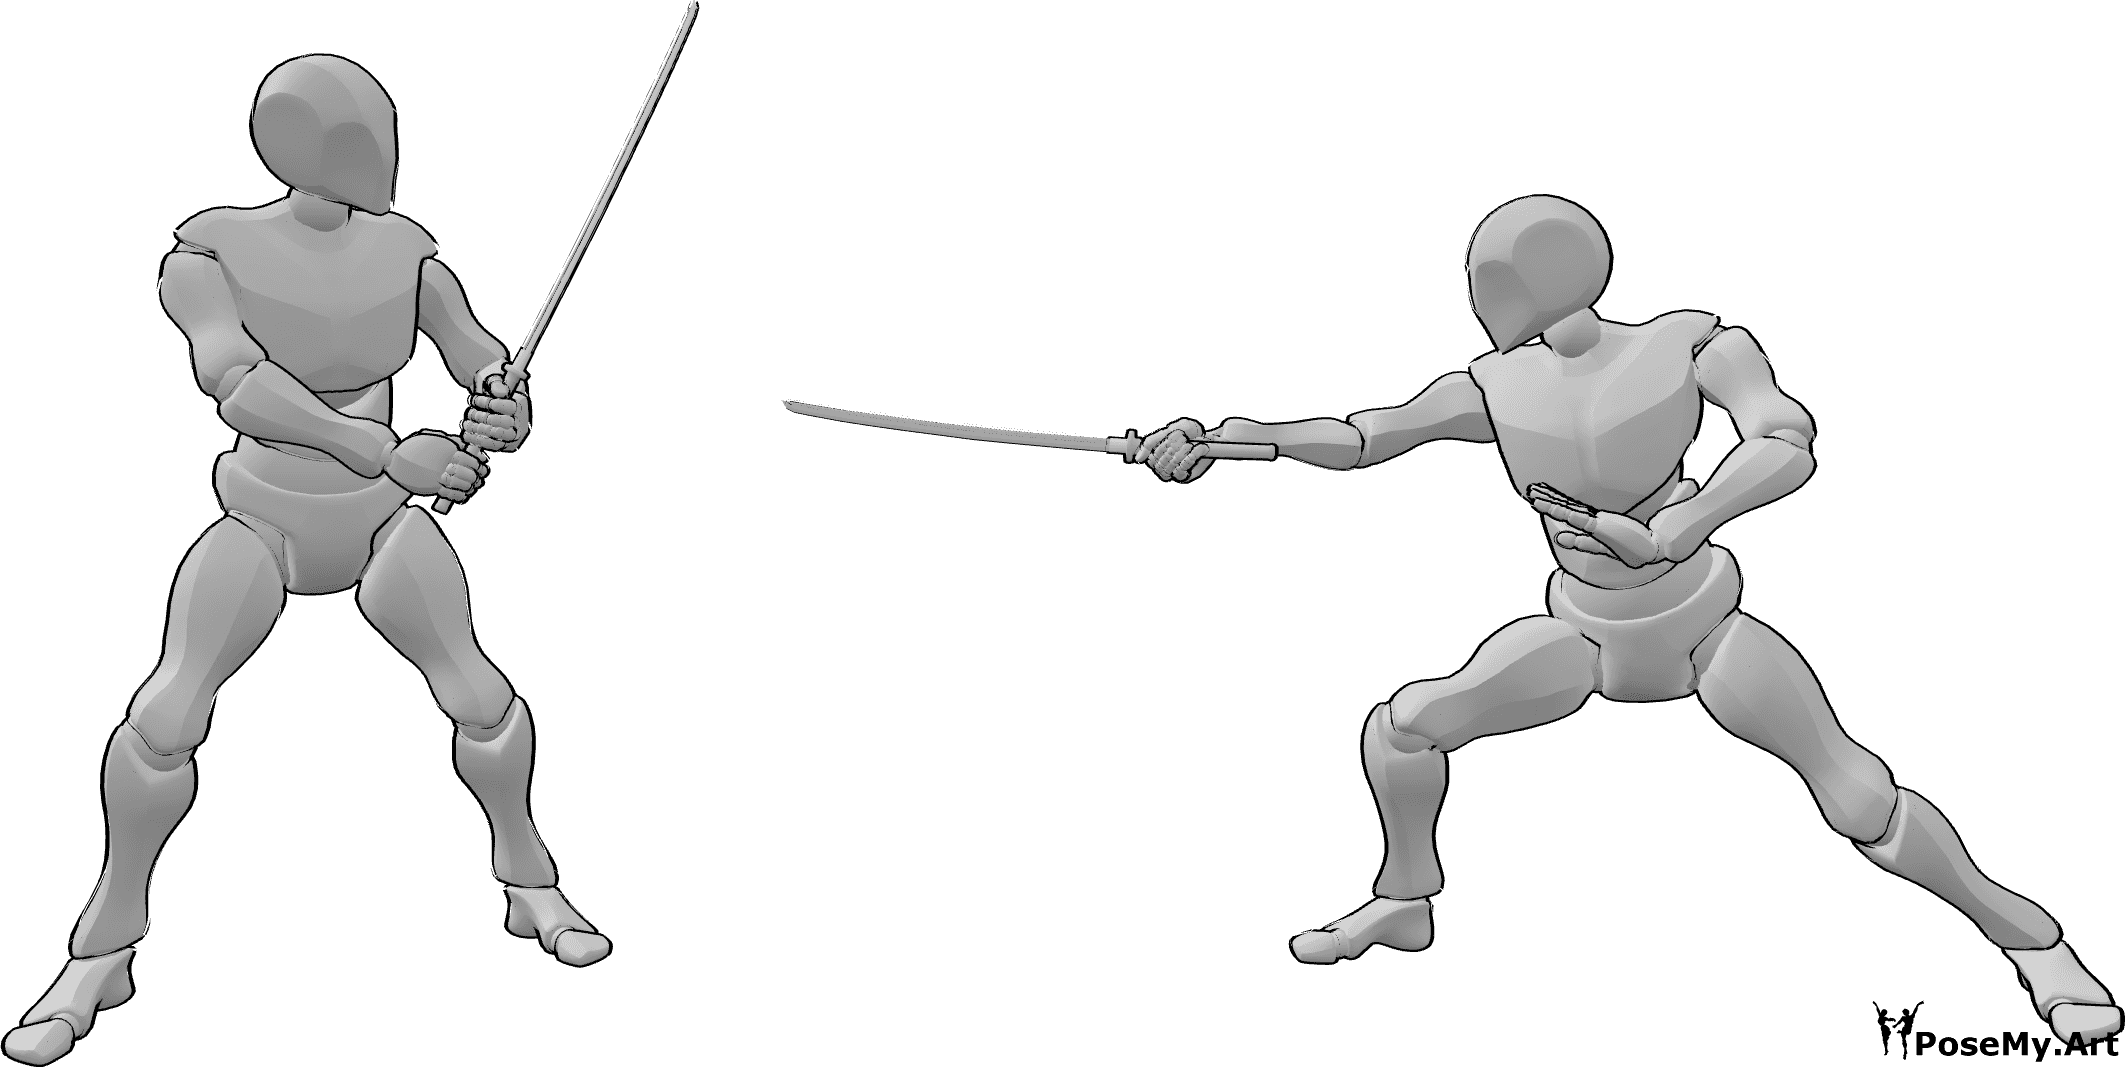 Riferimento alle pose- Posa della katana da combattimento - Due maschi combattono con la katana in posa